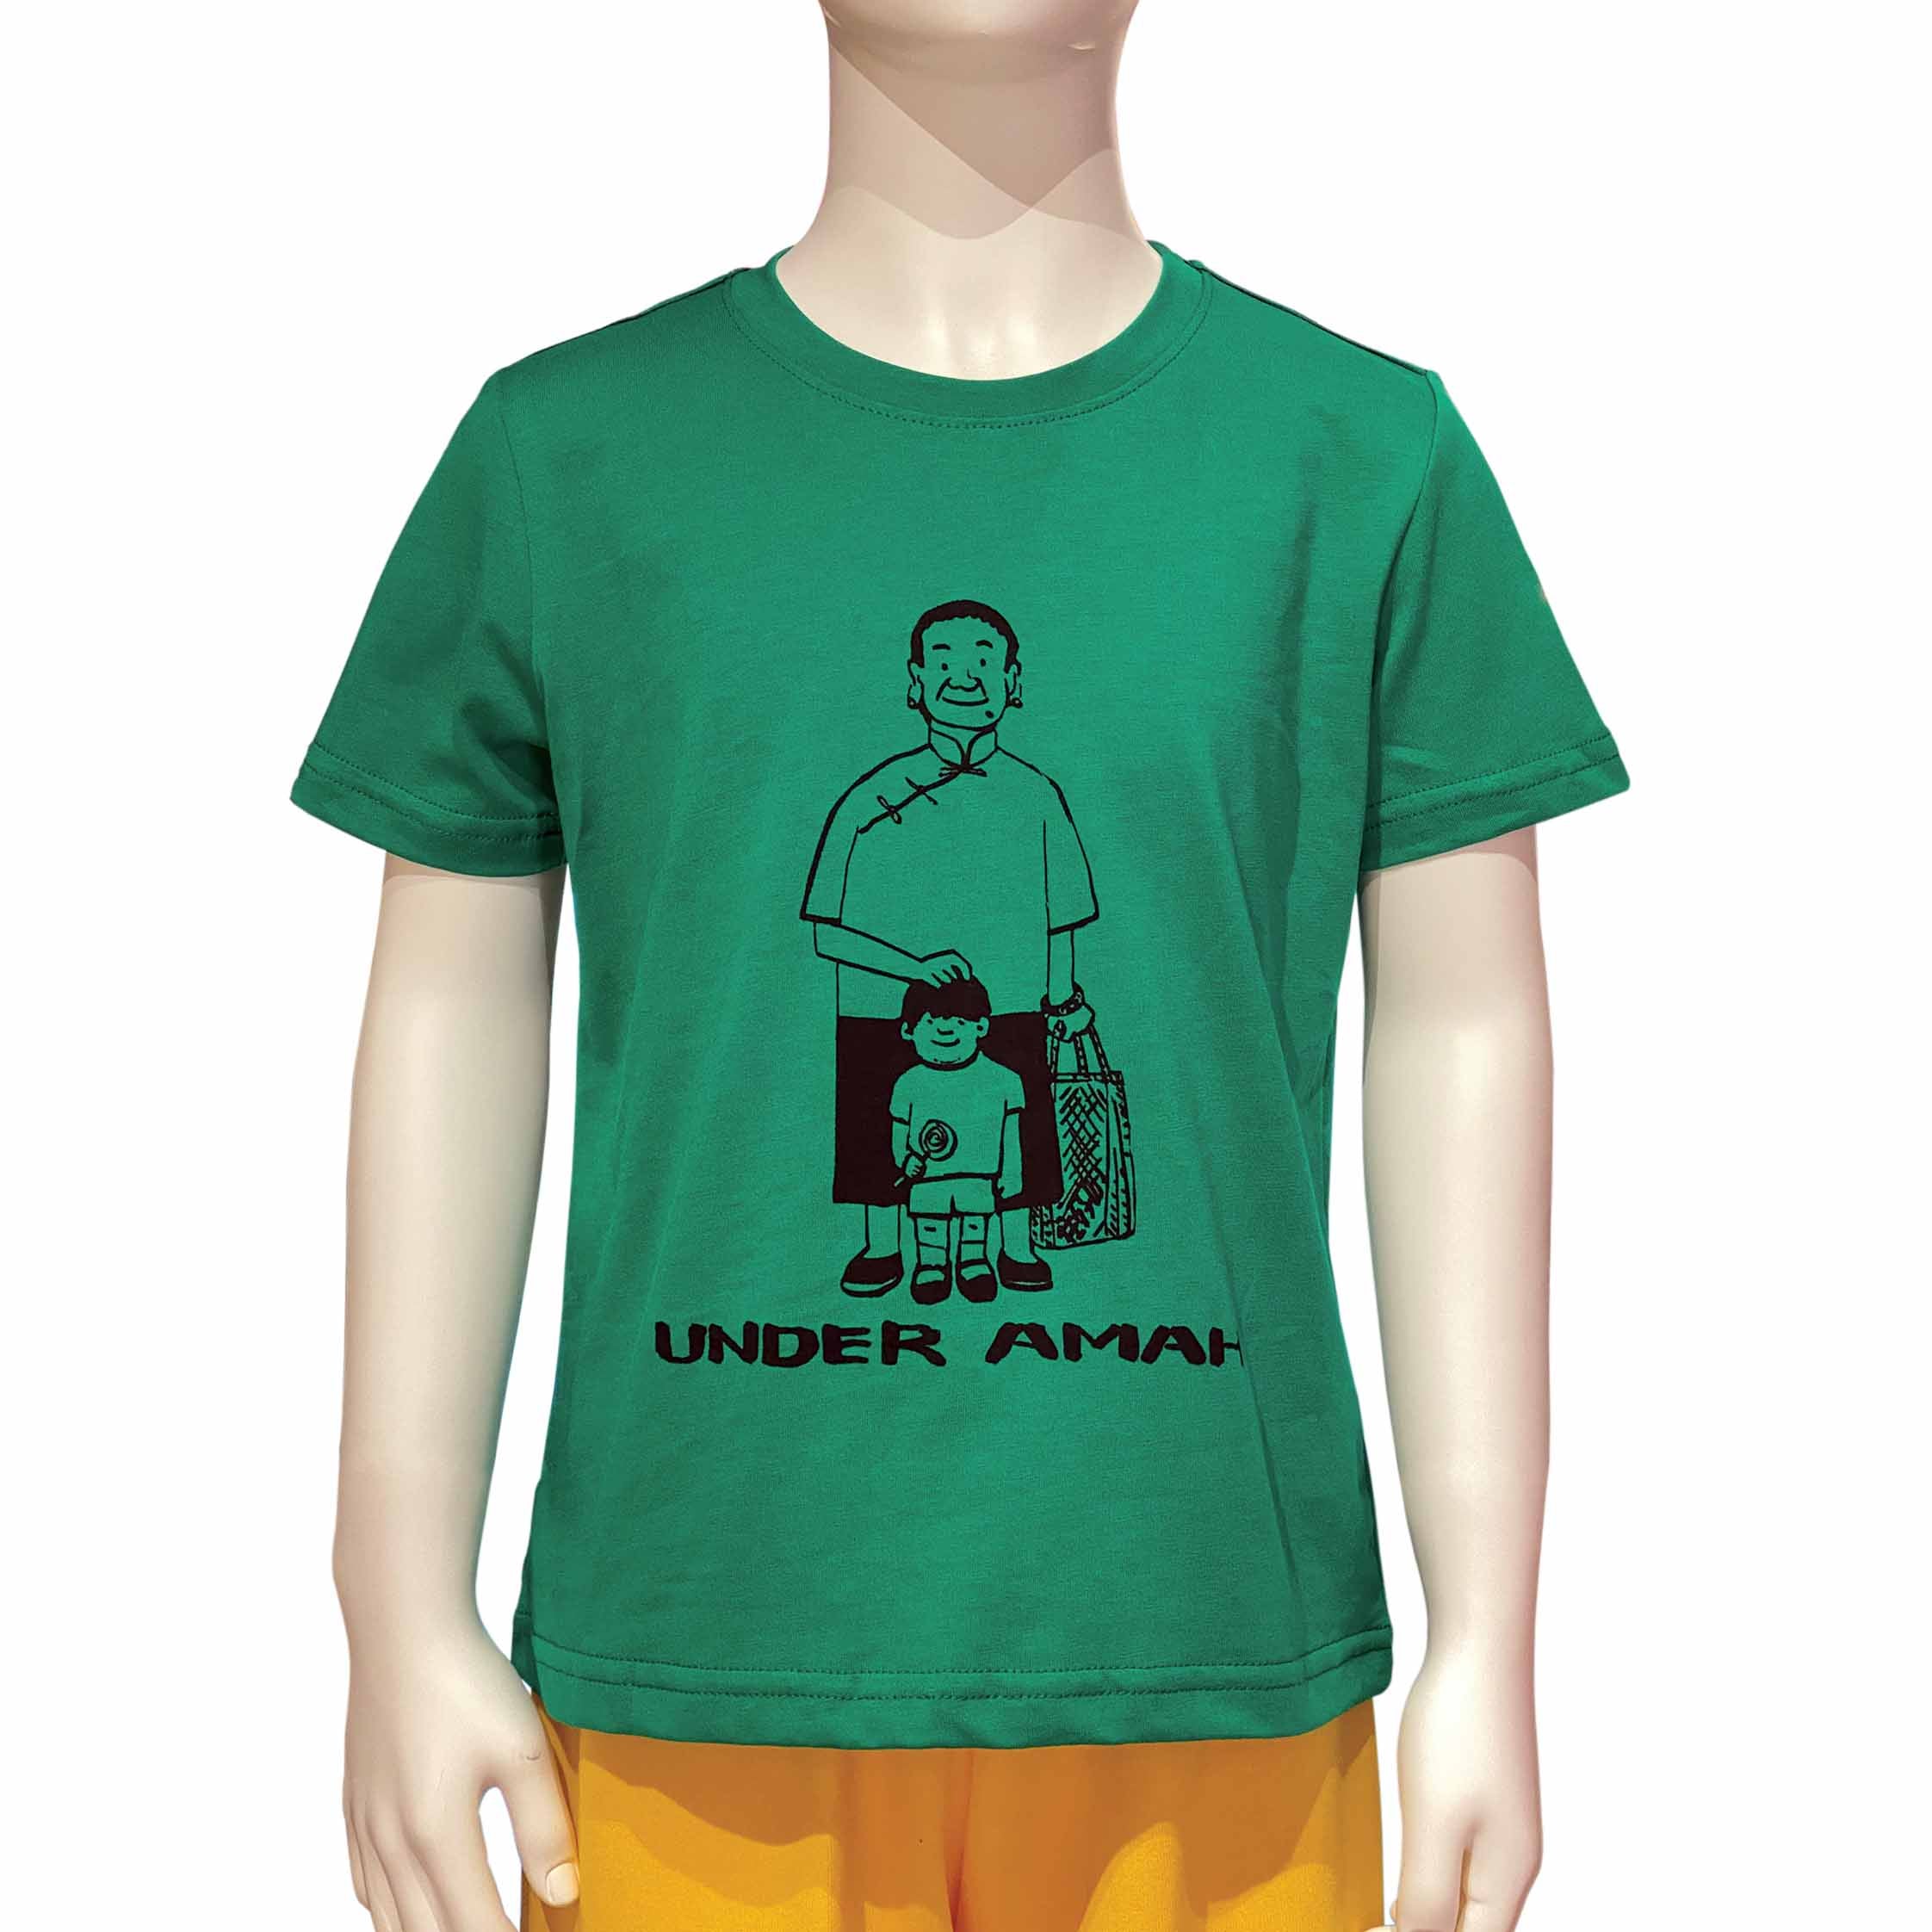 'Under Amah' Kids T-shirt, Forest Green